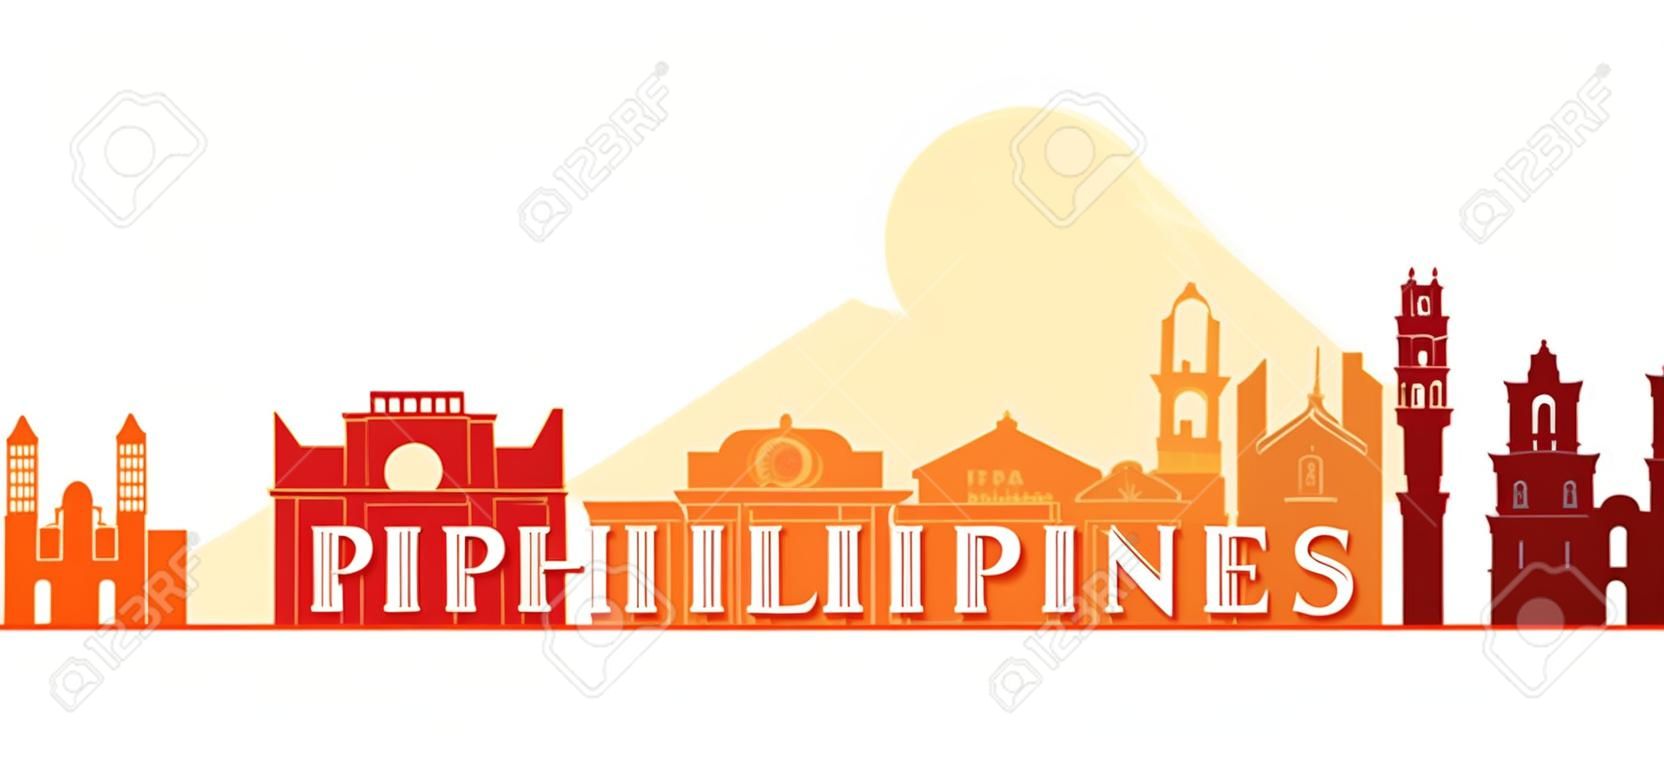 Philippines Architecture Repères Horizon, Forme, Paysage urbain, Voyage et attraction touristique